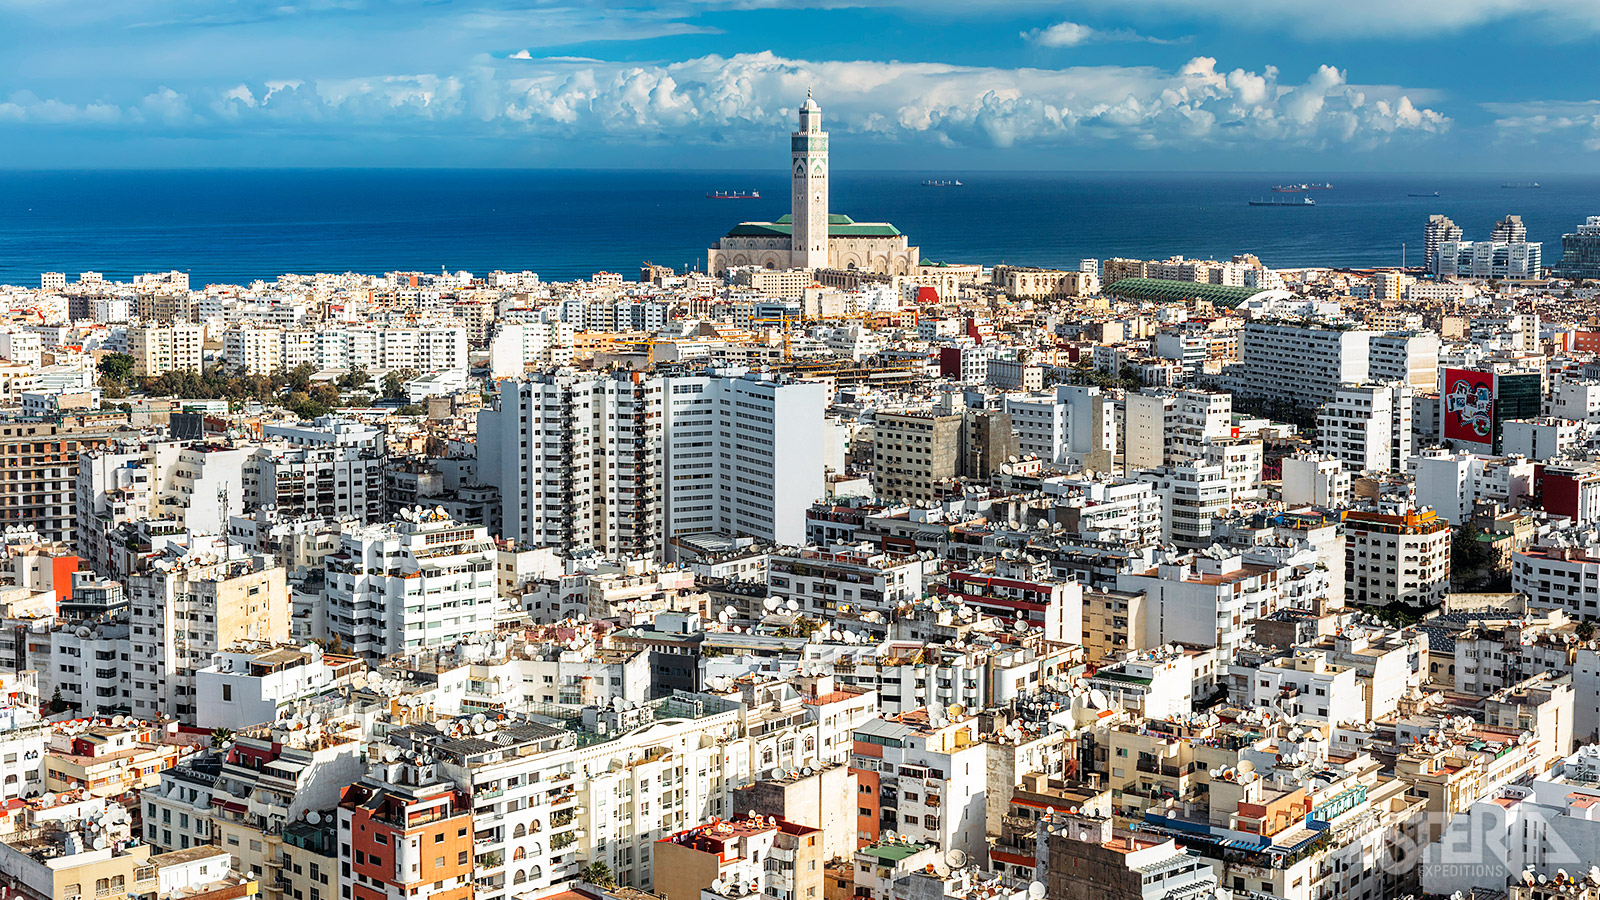 Casablanca of in het Arabisch ‘Dar el Beida’ is de grootste stad van het land en wordt gezien als het economisch en financieel hart